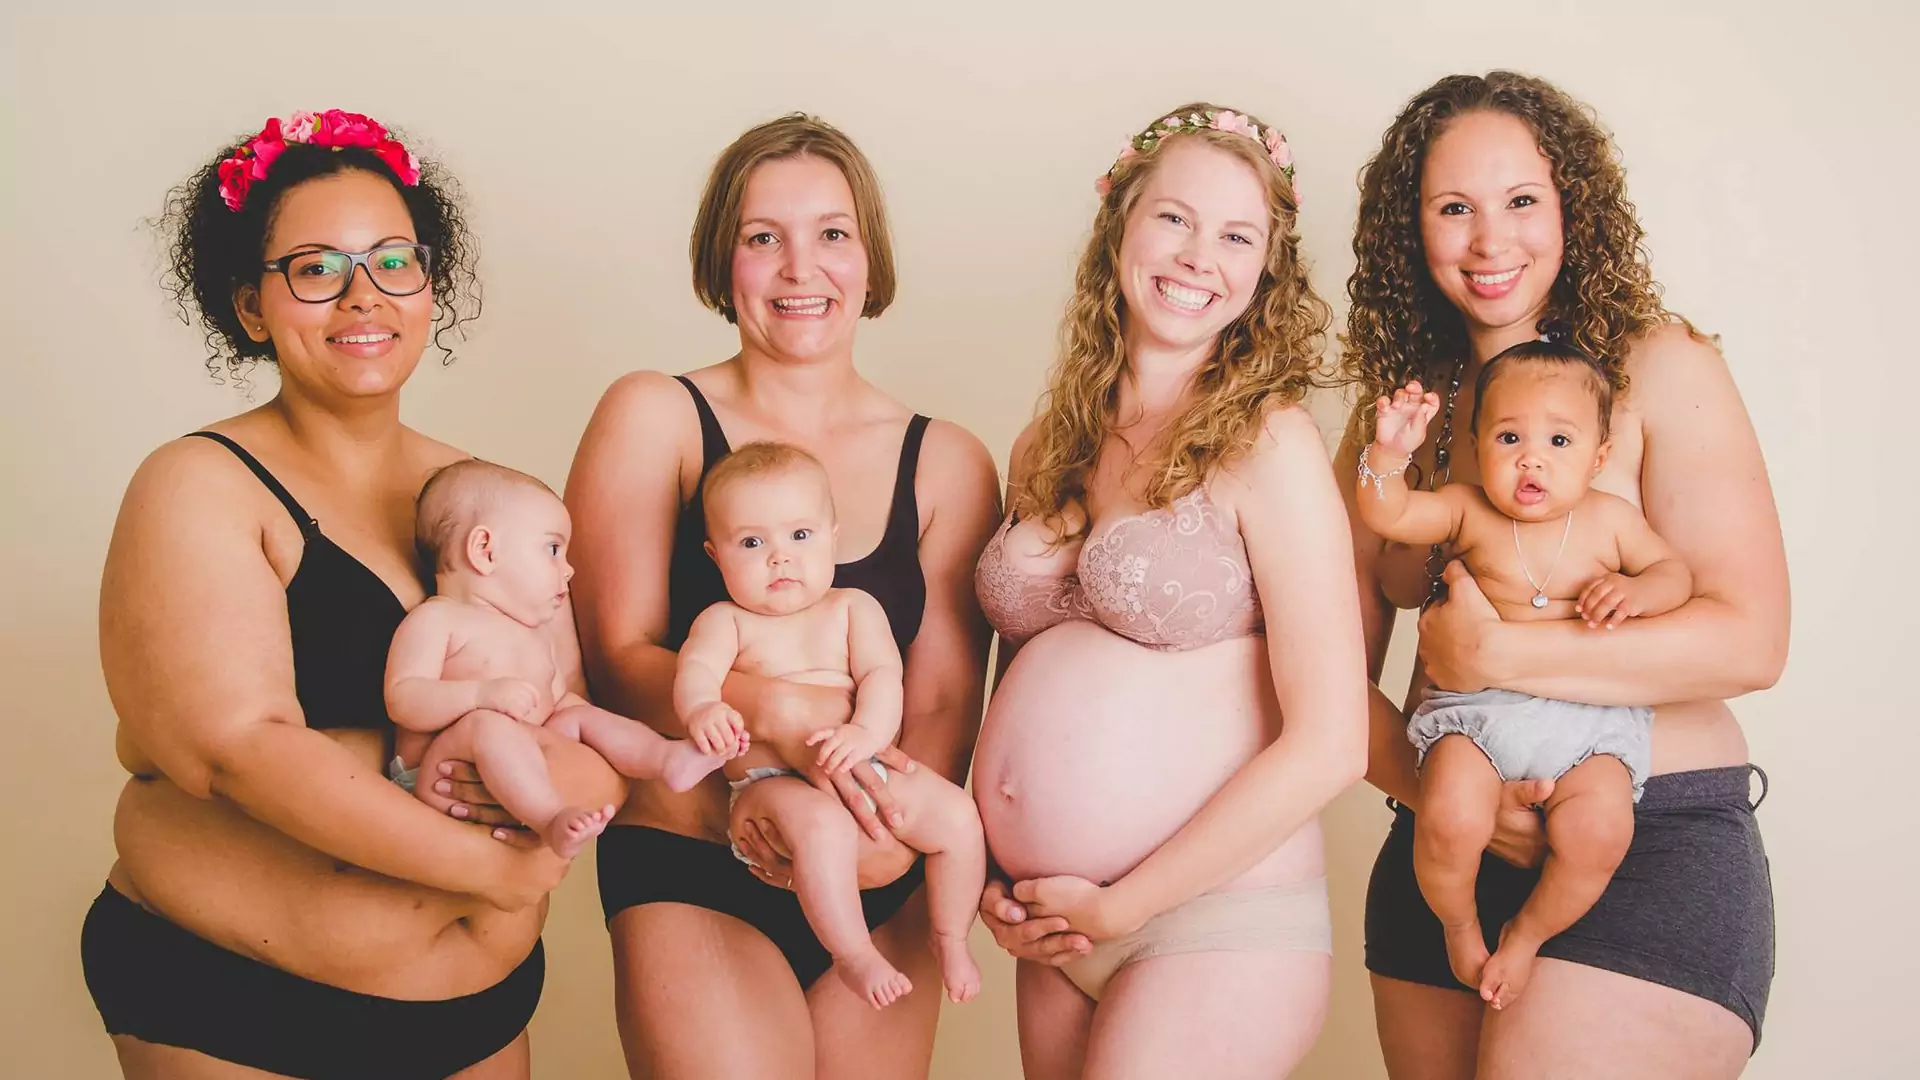 Kobiety po ciąży bez retuszu. Zamiast wstydzić się swoich ciał z dumą je prezentują. I słusznie! (ZDJĘCIA)